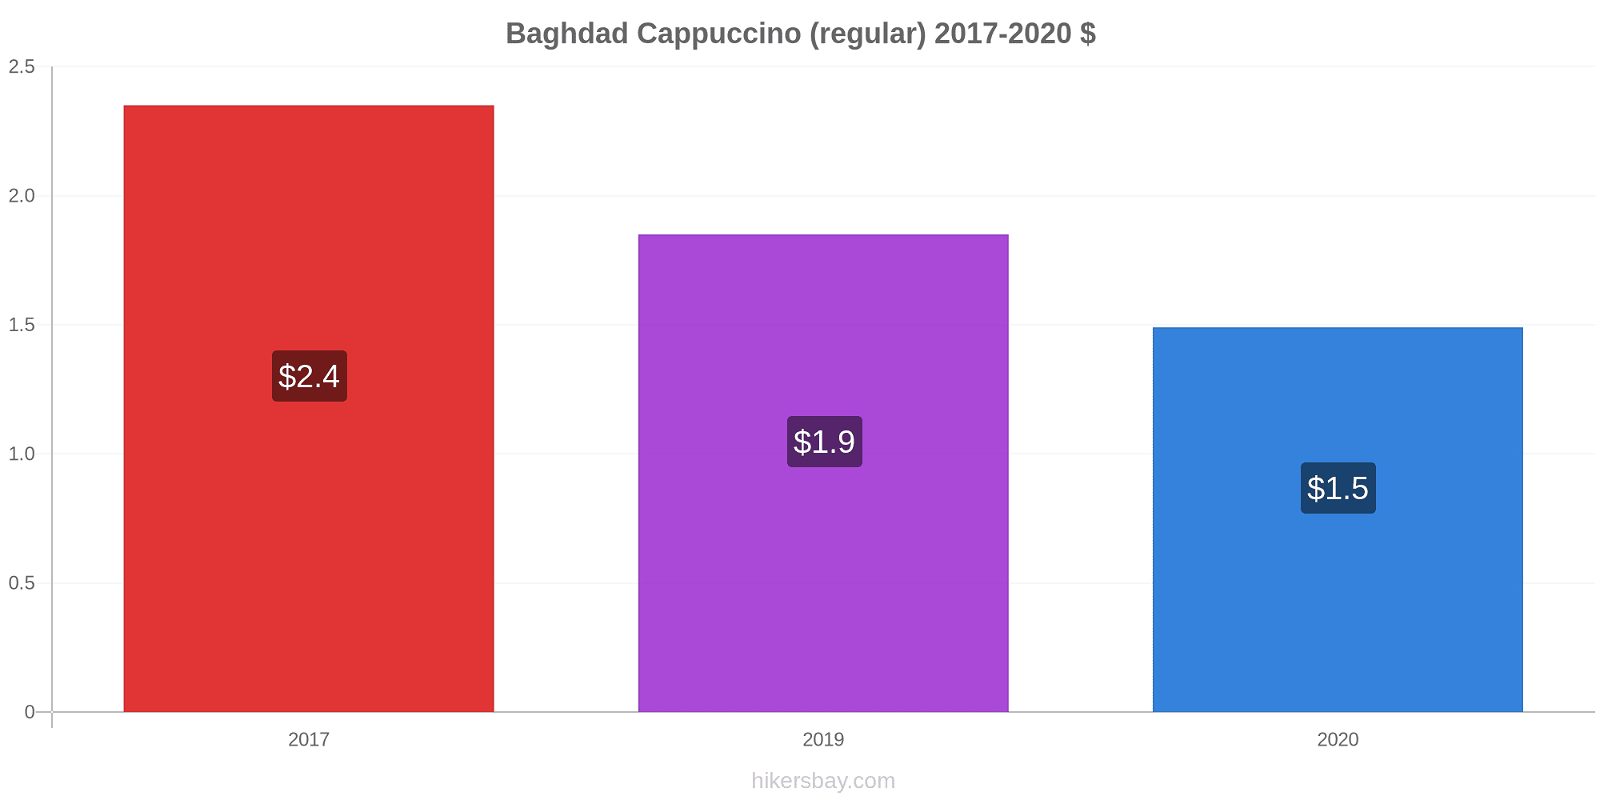 Baghdad price changes Cappuccino (regular) hikersbay.com